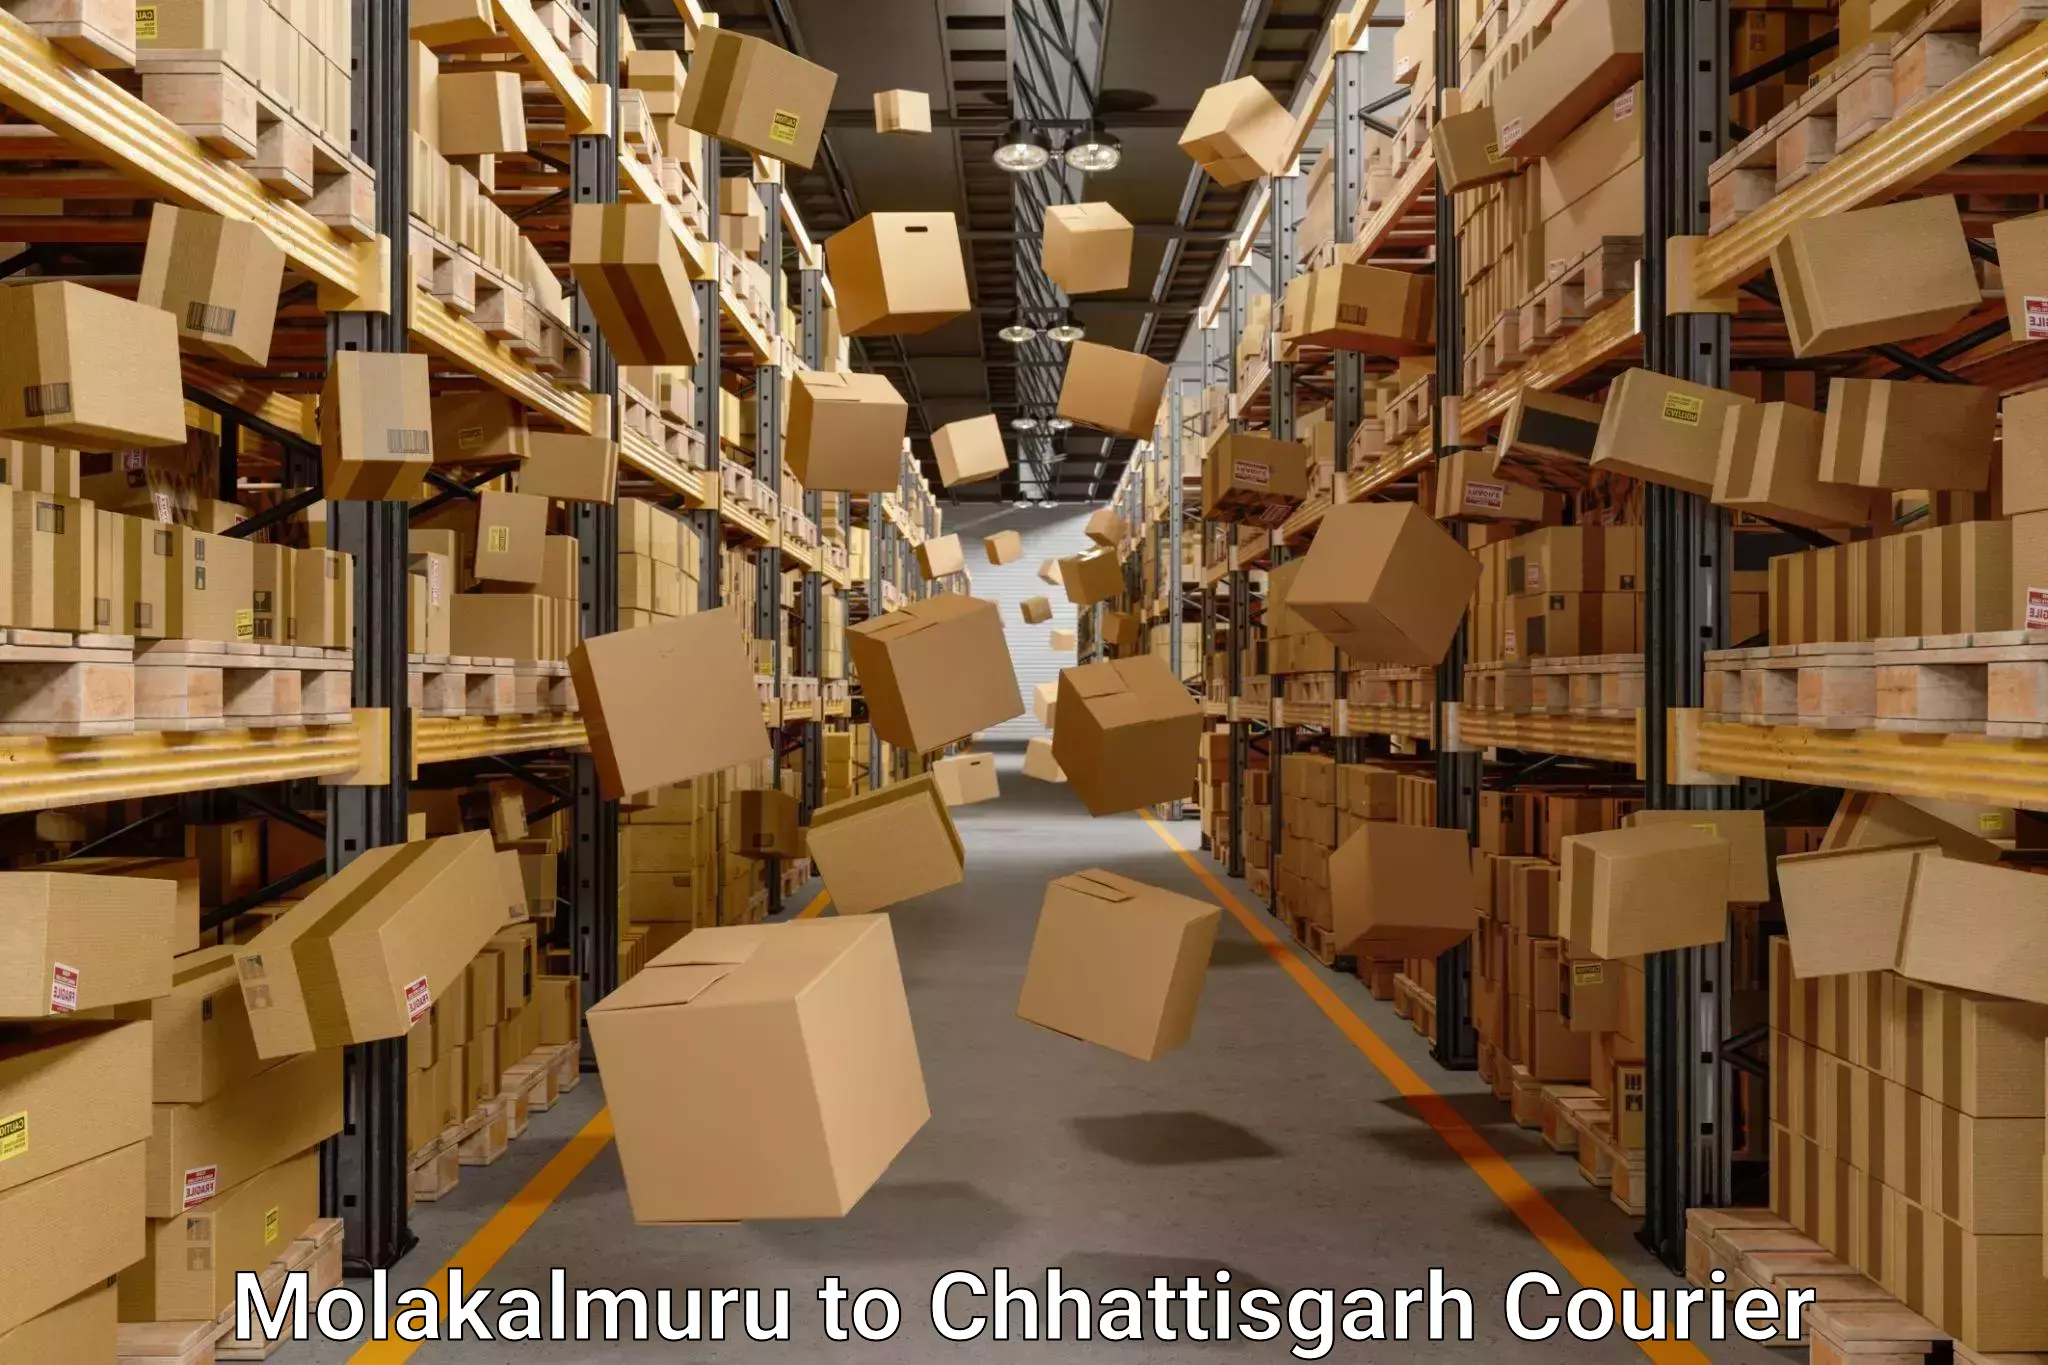 Quick relocation services Molakalmuru to Chhattisgarh